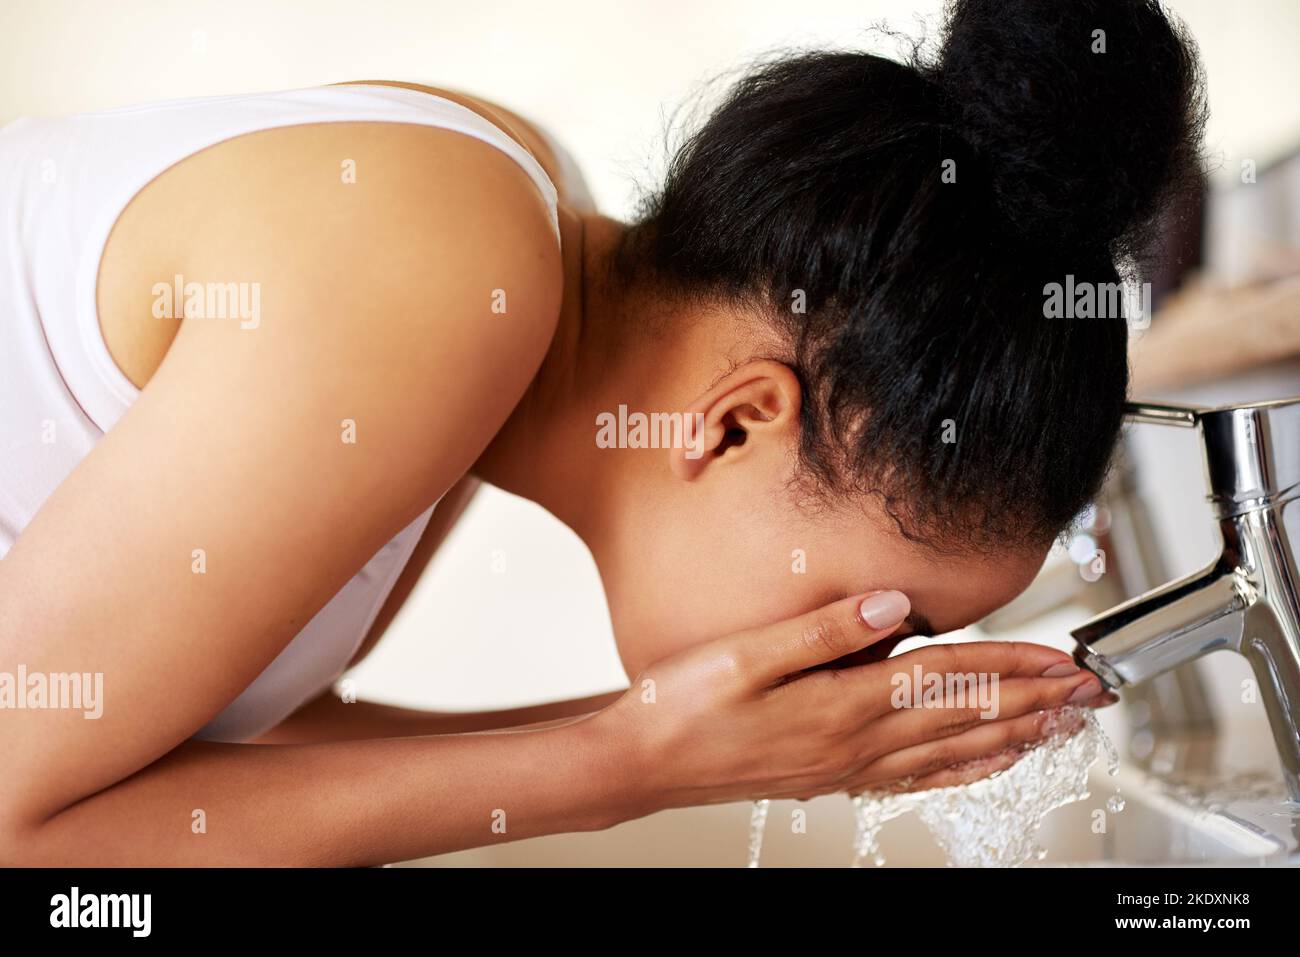 Ihre Haut mit der Liebe zu behandeln, die sie verdient. Eine junge Frau wäscht ihr Gesicht am Waschbecken im Badezimmer. Stockfoto